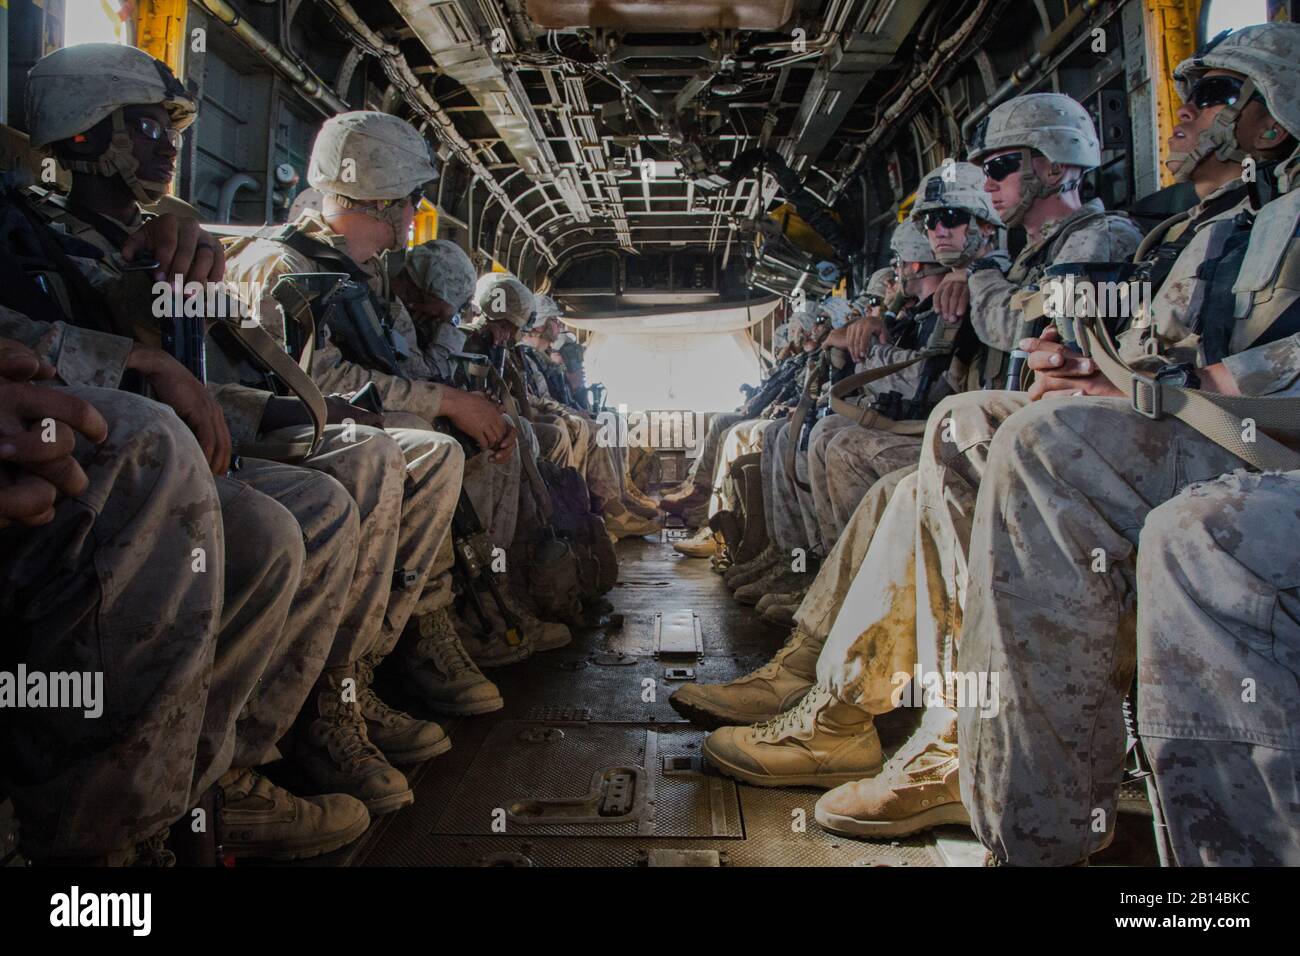 Los Marines de Estados Unidos con el 2º Batallón, 6º Regimiento de la infantería de marina son transportados por una del tipo CH-53E Super Stallion helicóptero asignado al escuadrón de helicópteros pesados de Marina (HMH) 466 durante un ejercicio como parte del curso de instructores de armas y tácticas (WTI) 2-17 cerca de Yuma, Arizona, 20 de abril de 2017. El WTI se celebra bianualmente en Marine Corps Air Station (MCAS) Yuma, Arizona, para proporcionar a los estudiantes con la formación detallada sobre las diferentes gamas en Arizona y California. (Ee.Uu. Marine Corps foto por CPL. A. Trever Statz) Foto de stock